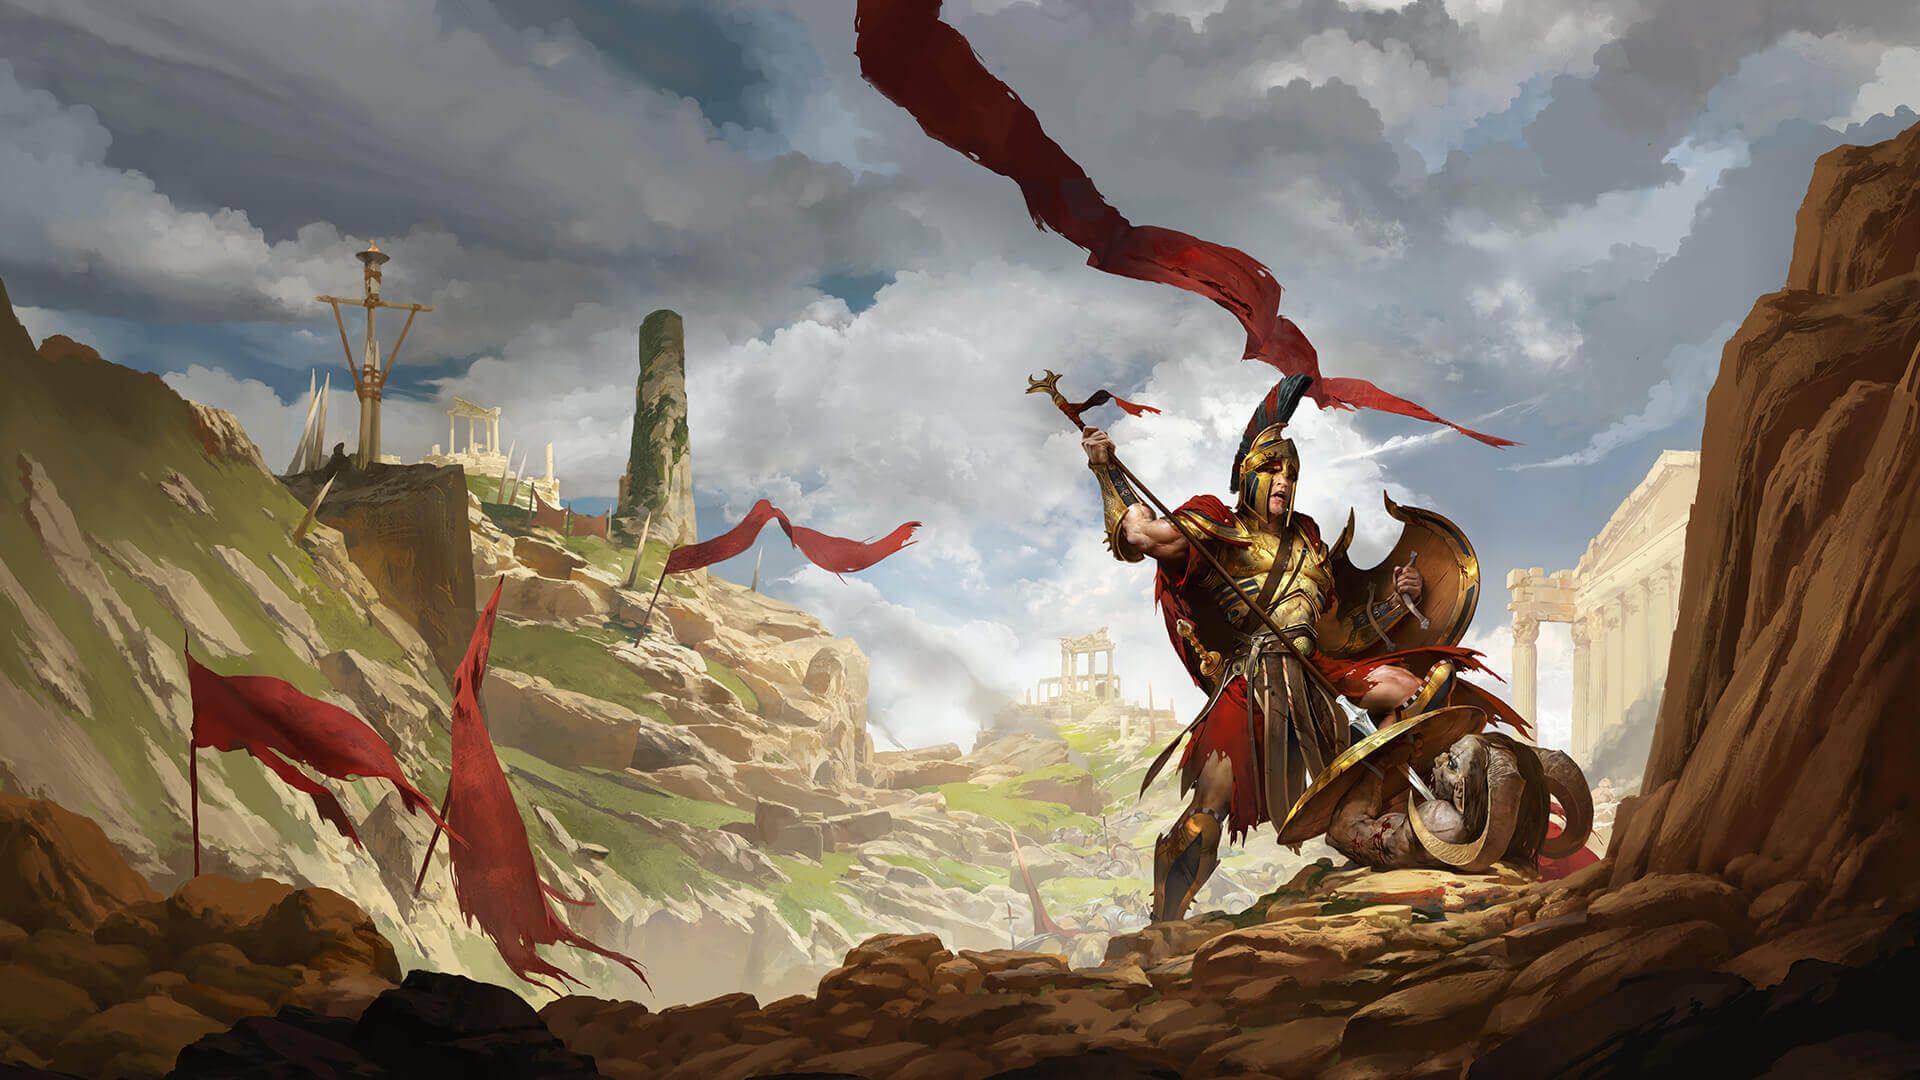 Jagged Alliance Gold Edition e Titan Quest: jogos estão gratuitos